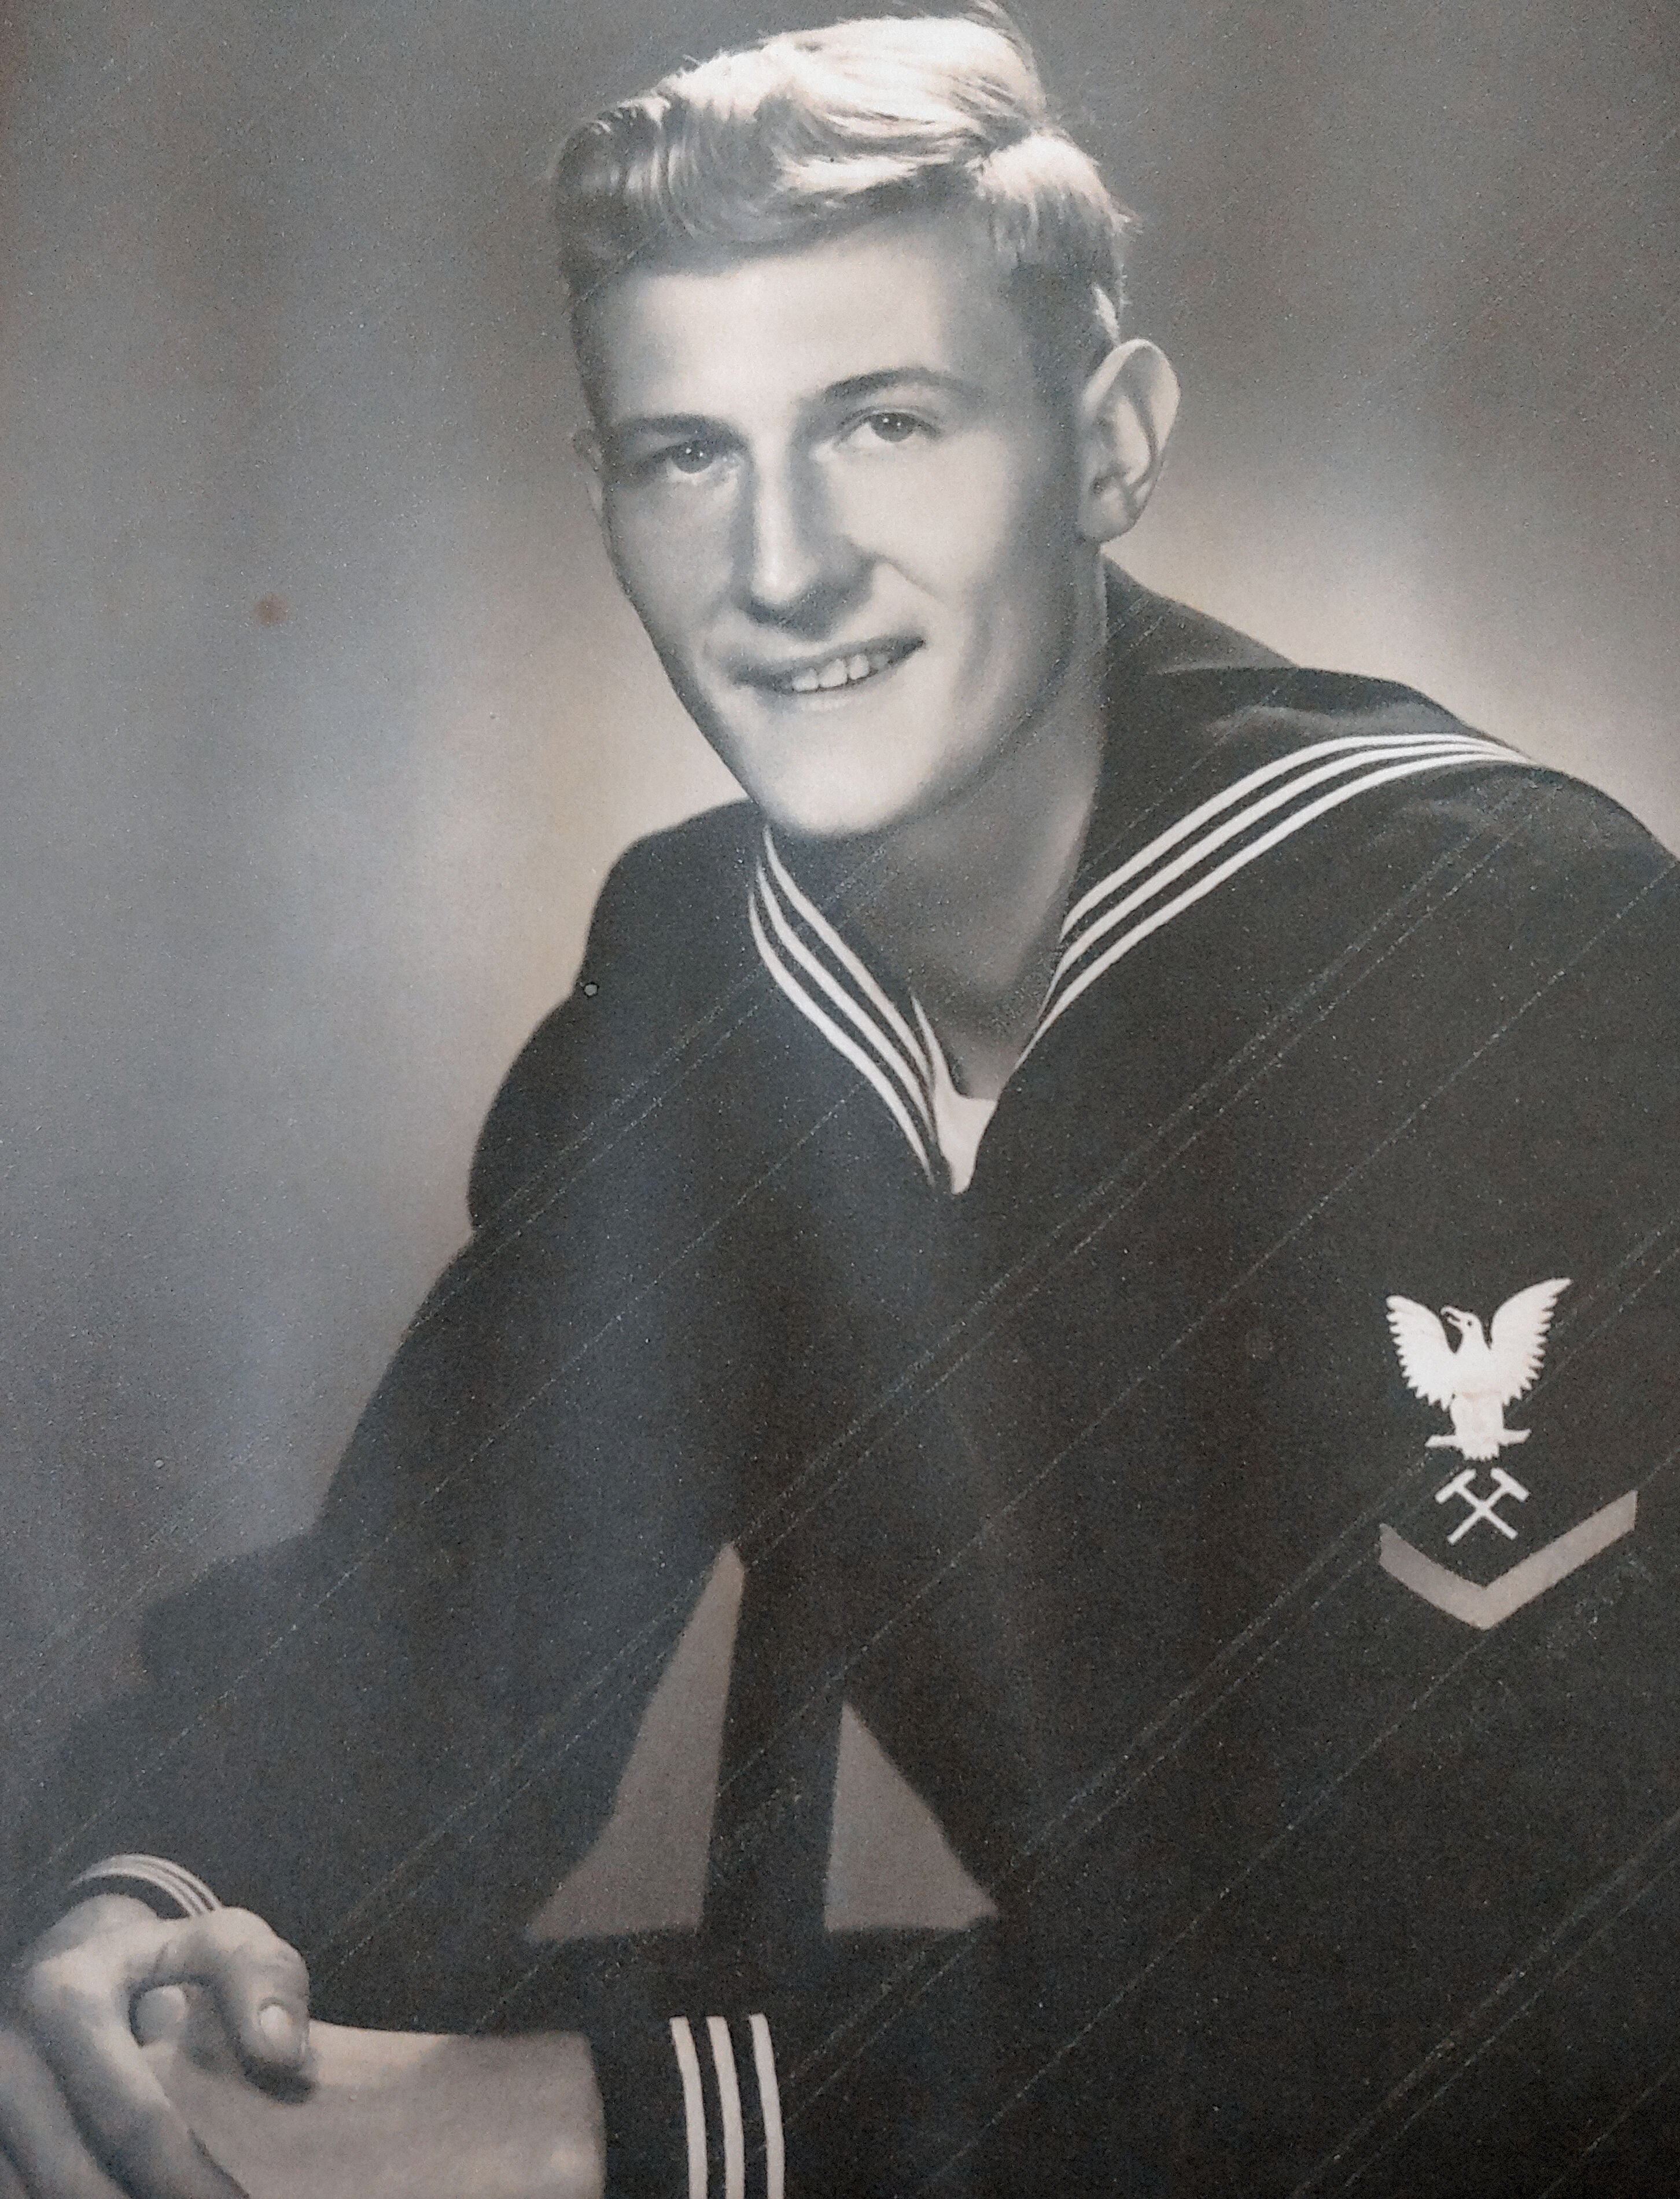 Richard E Hilligus   Navy
1951
3rd Class Petty Officer